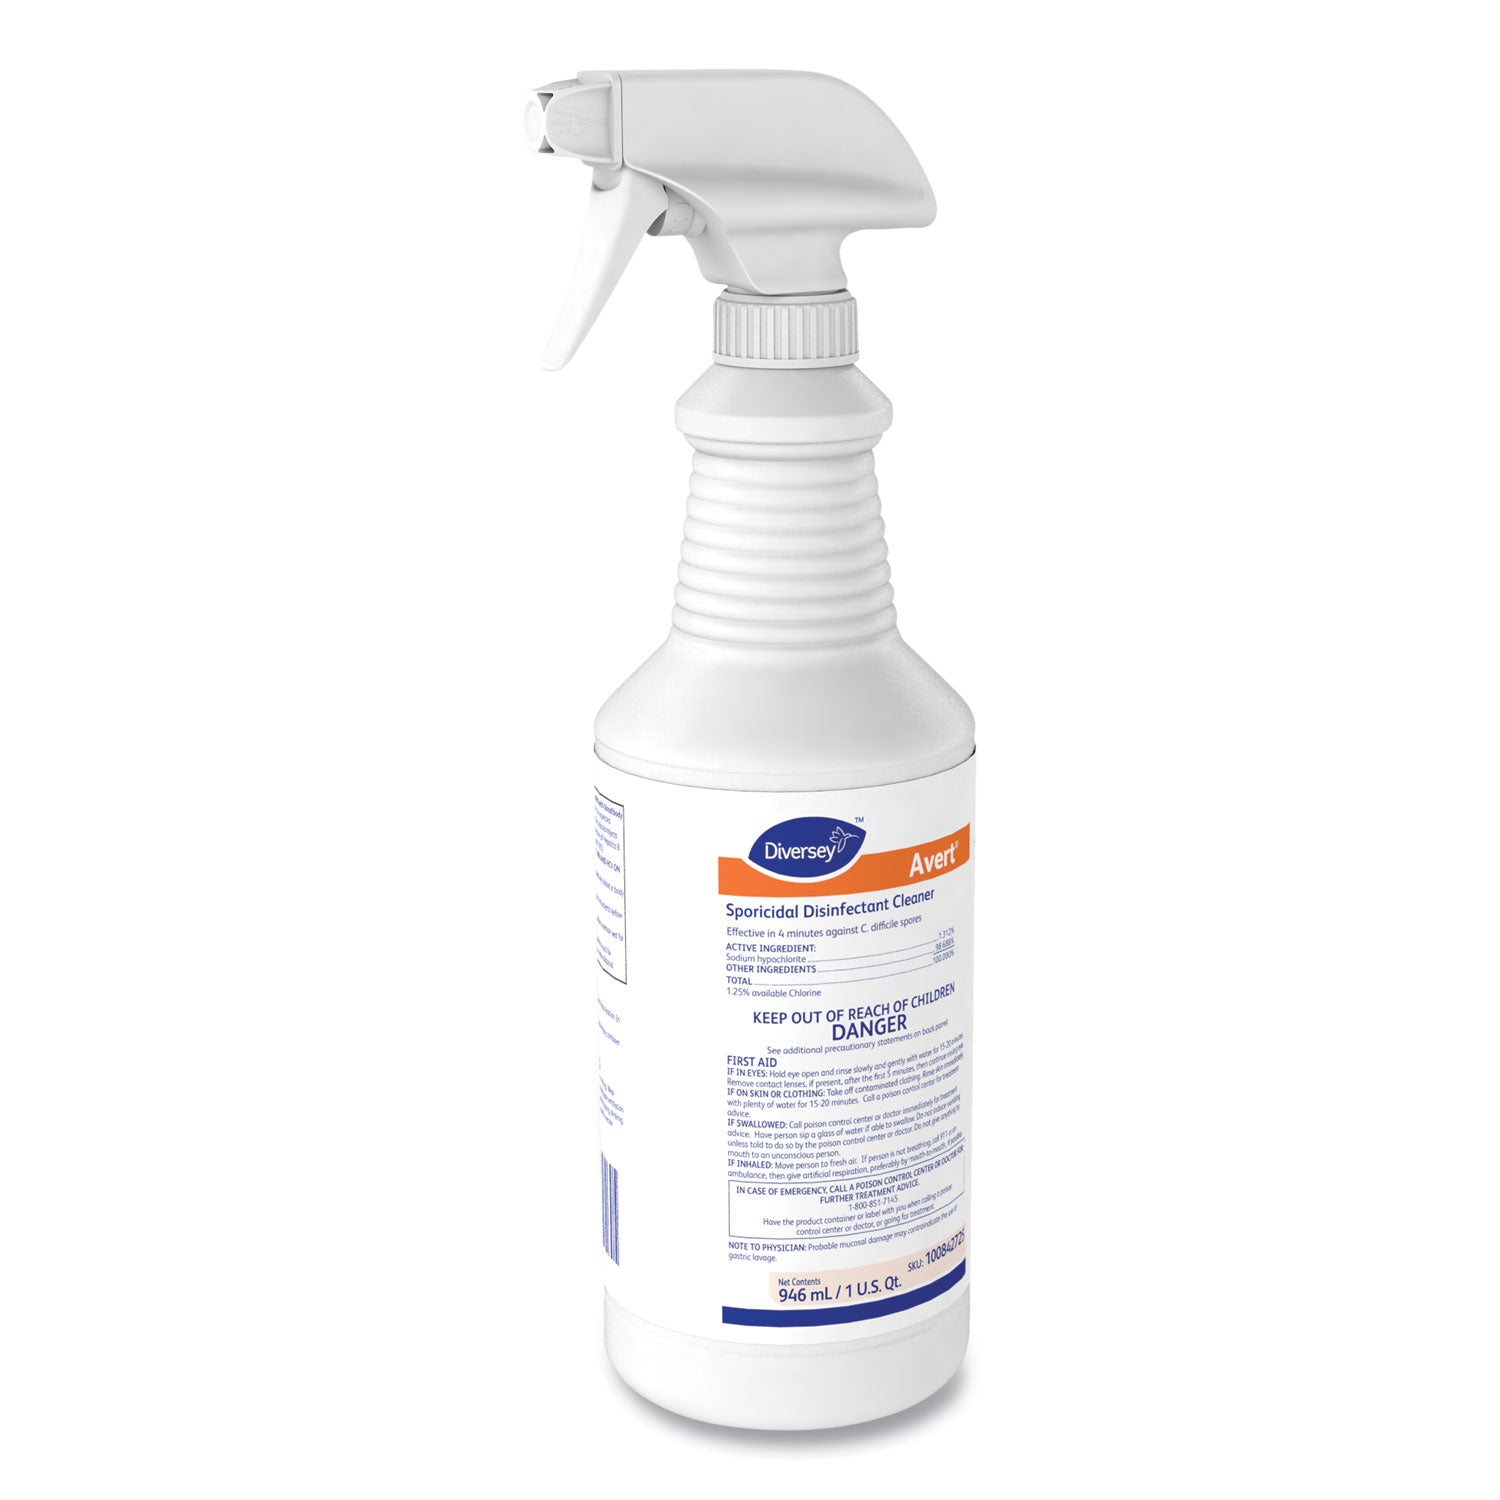 avert-sporicidal-disinfectant-cleaner-32-oz-spray-bottle-12-carton_dvo100842725 - 1